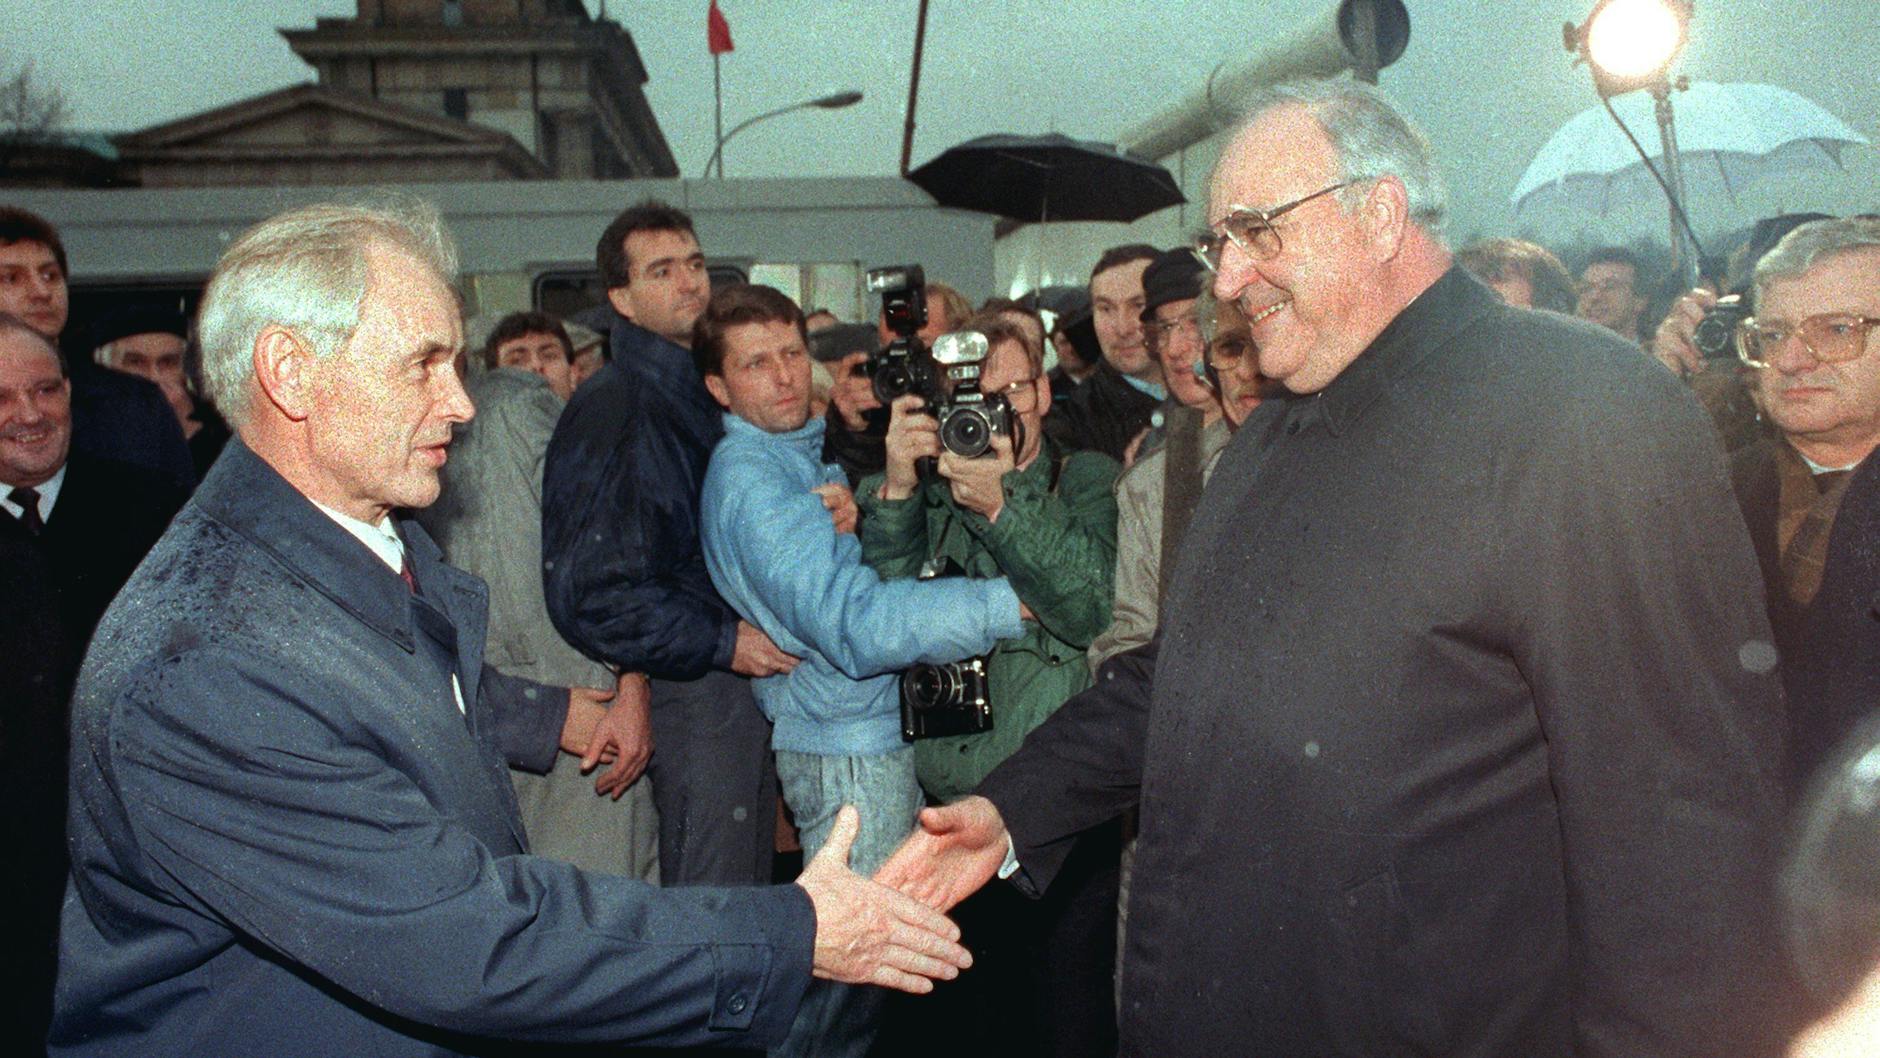 Der Ministerpräsident der DDR, Hans Modrow (l.), empfängt Bundeskanzler Helmut Kohl (CDU) am 22. Dezember 1989 auf der Ostseite des Brandenburger Tores.